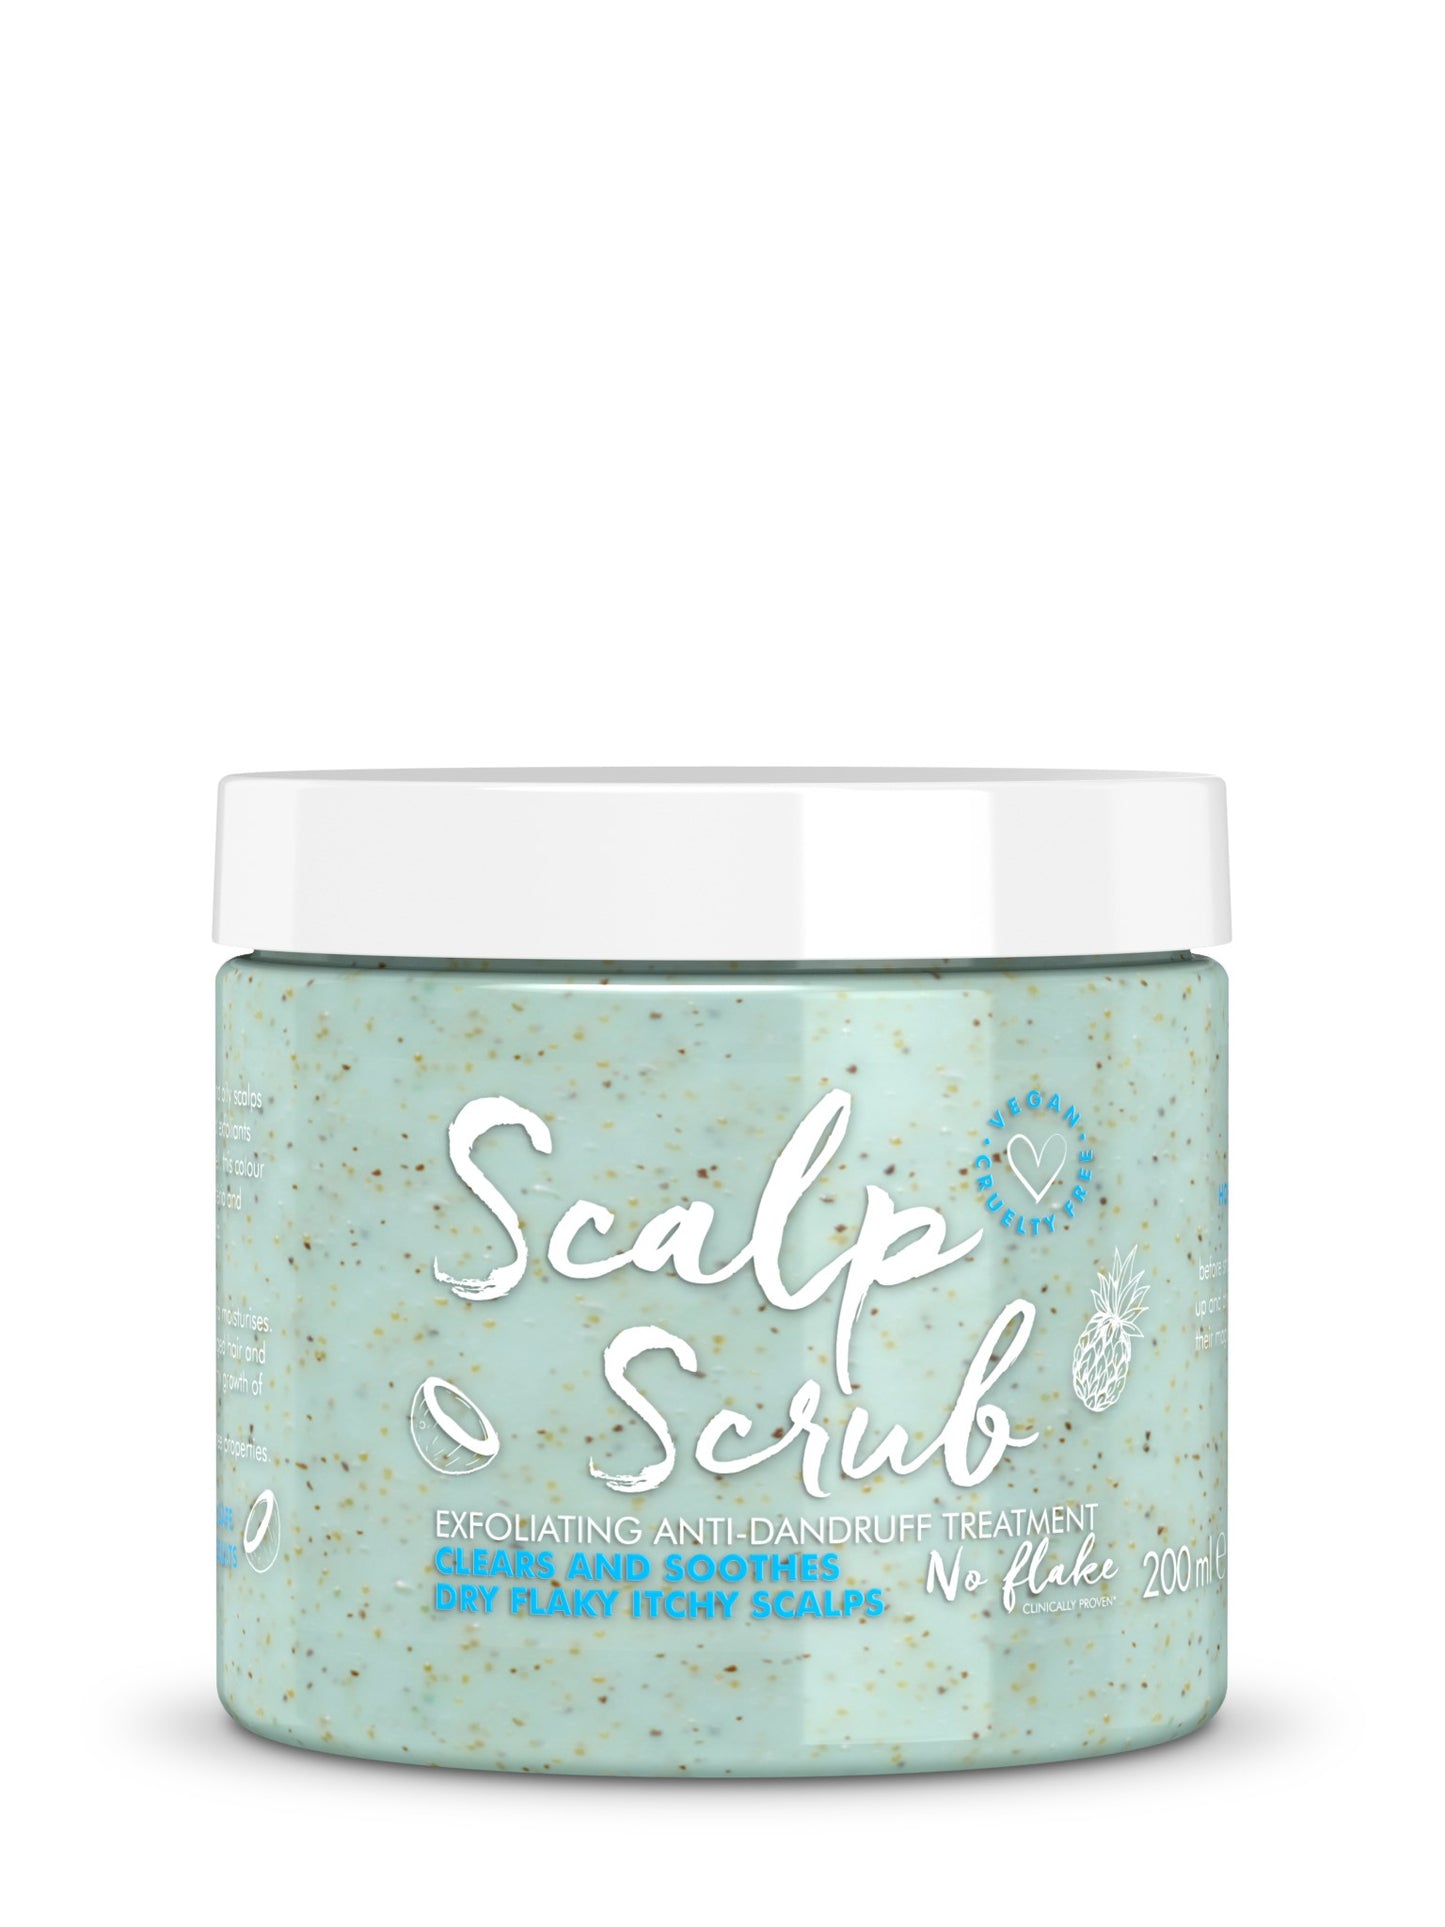 scalp scrub anti-dandruff